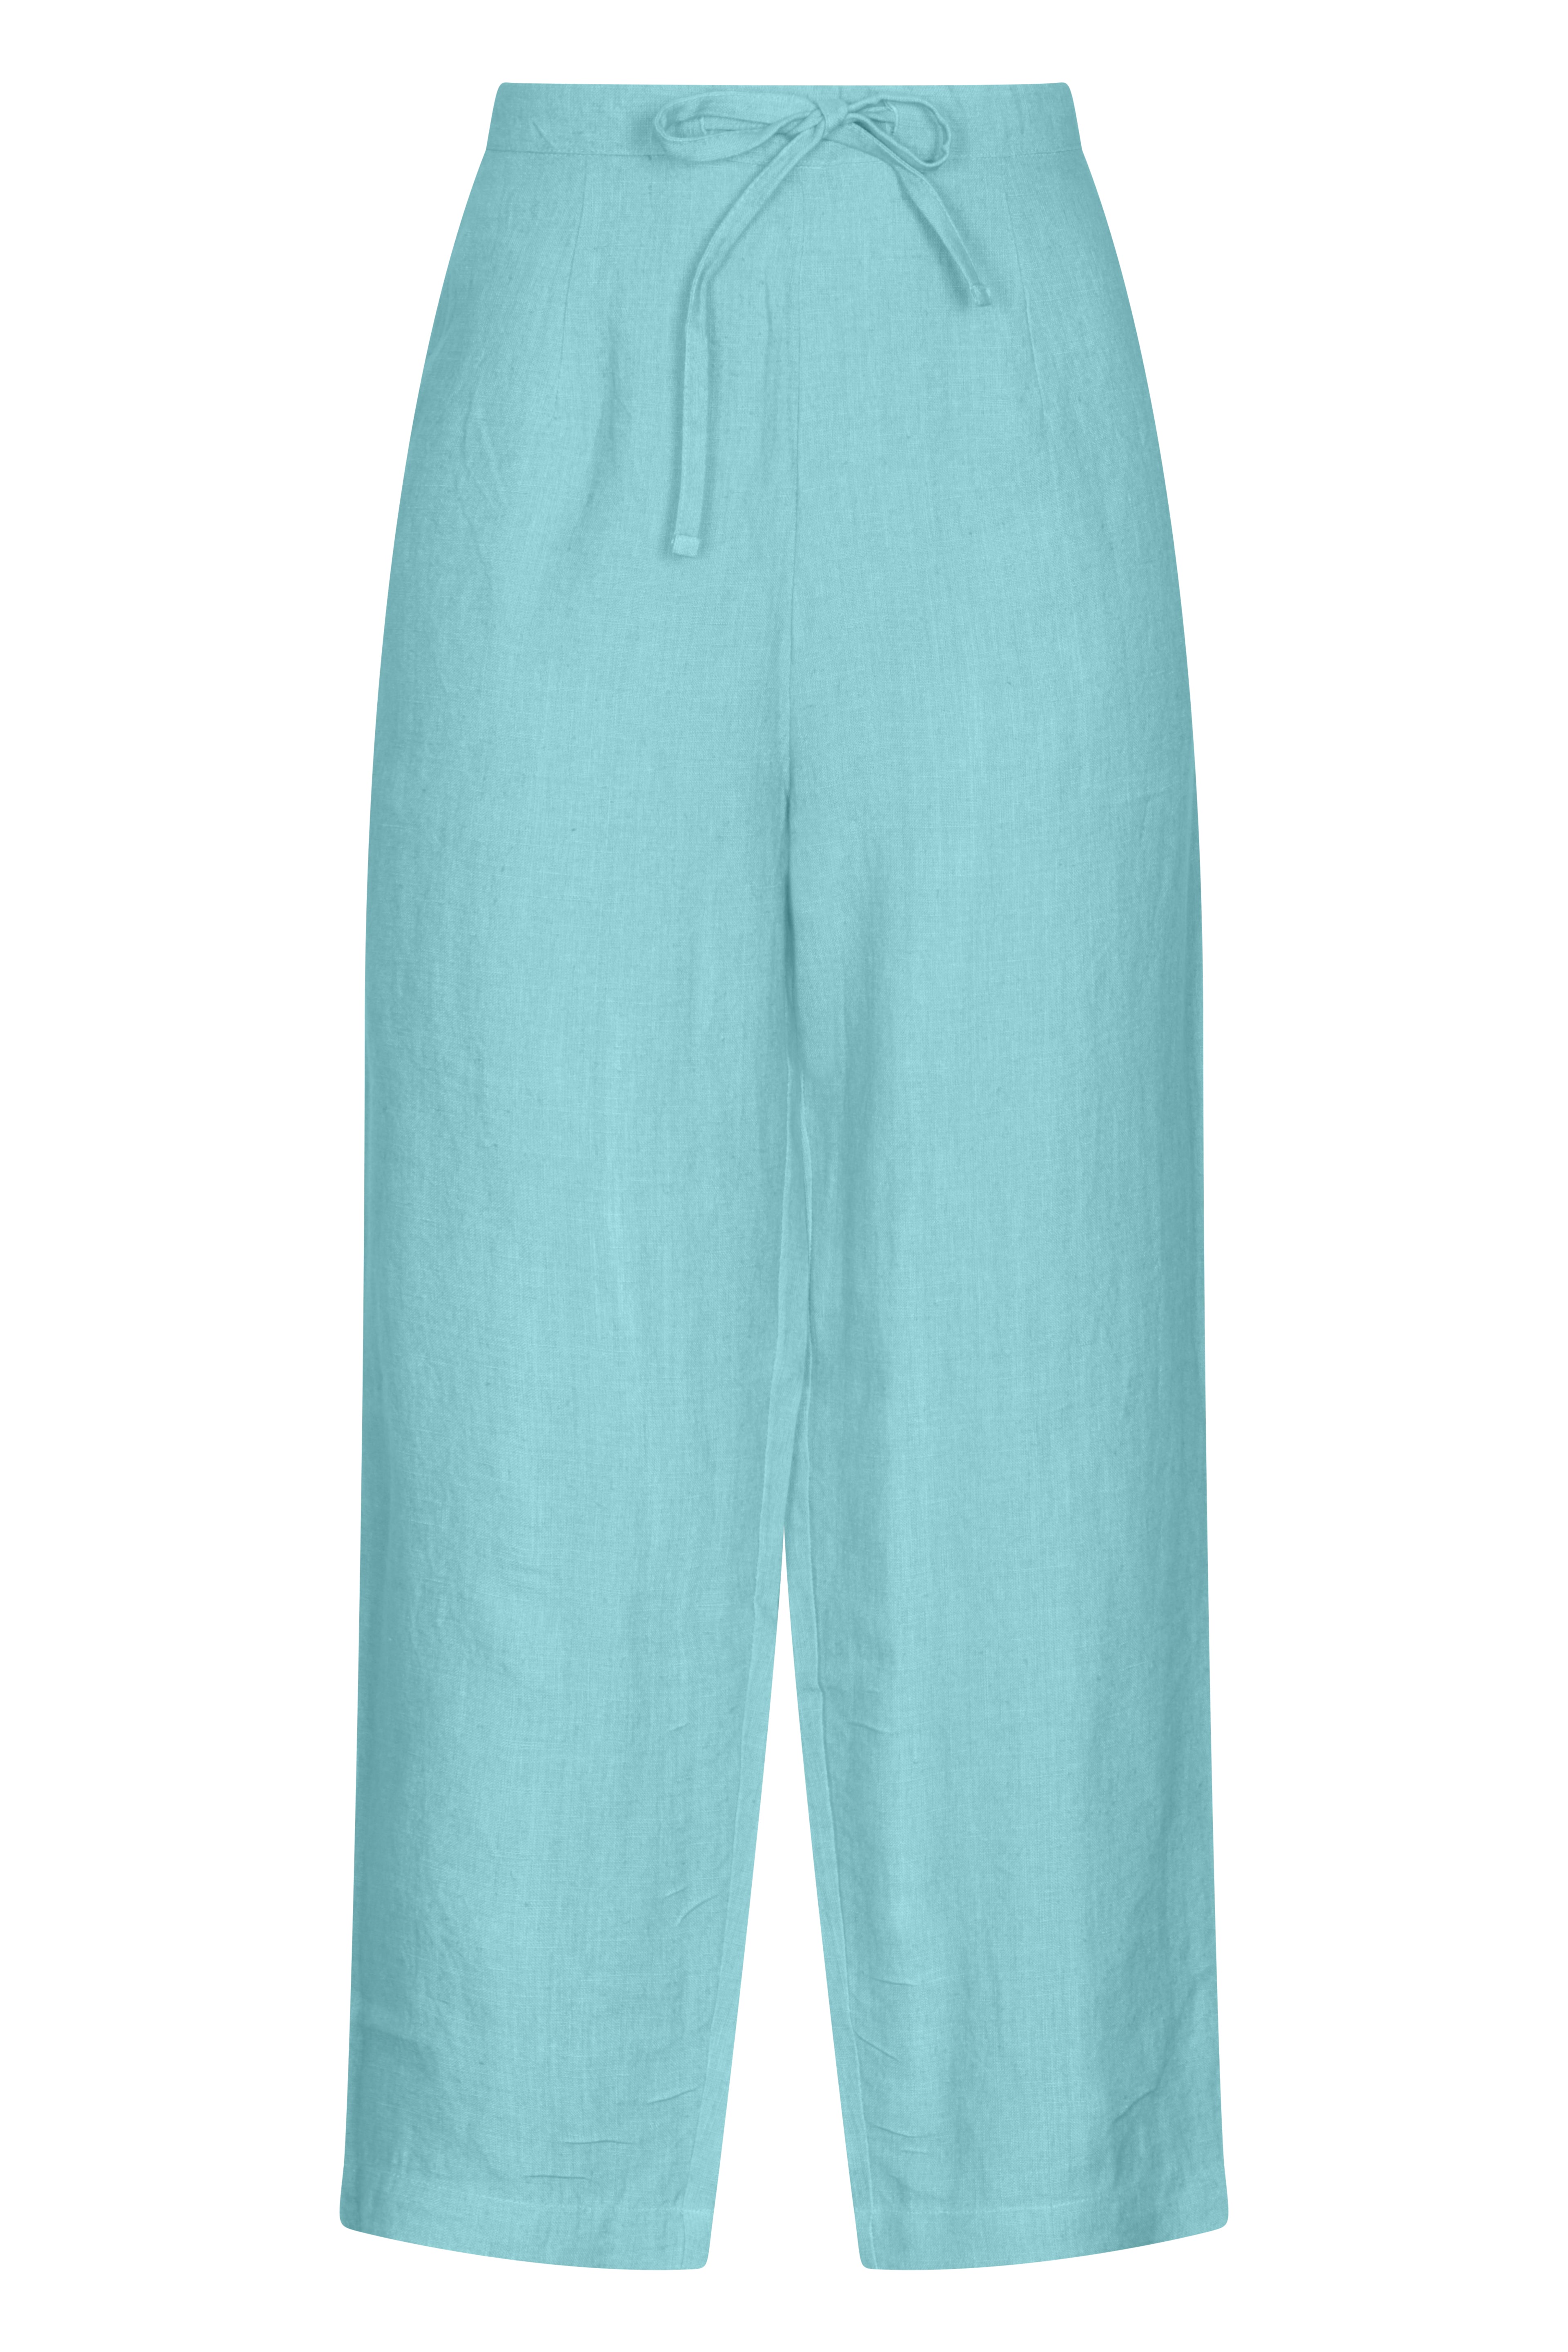 Life Style Plain Trouser Linen Blue Glow